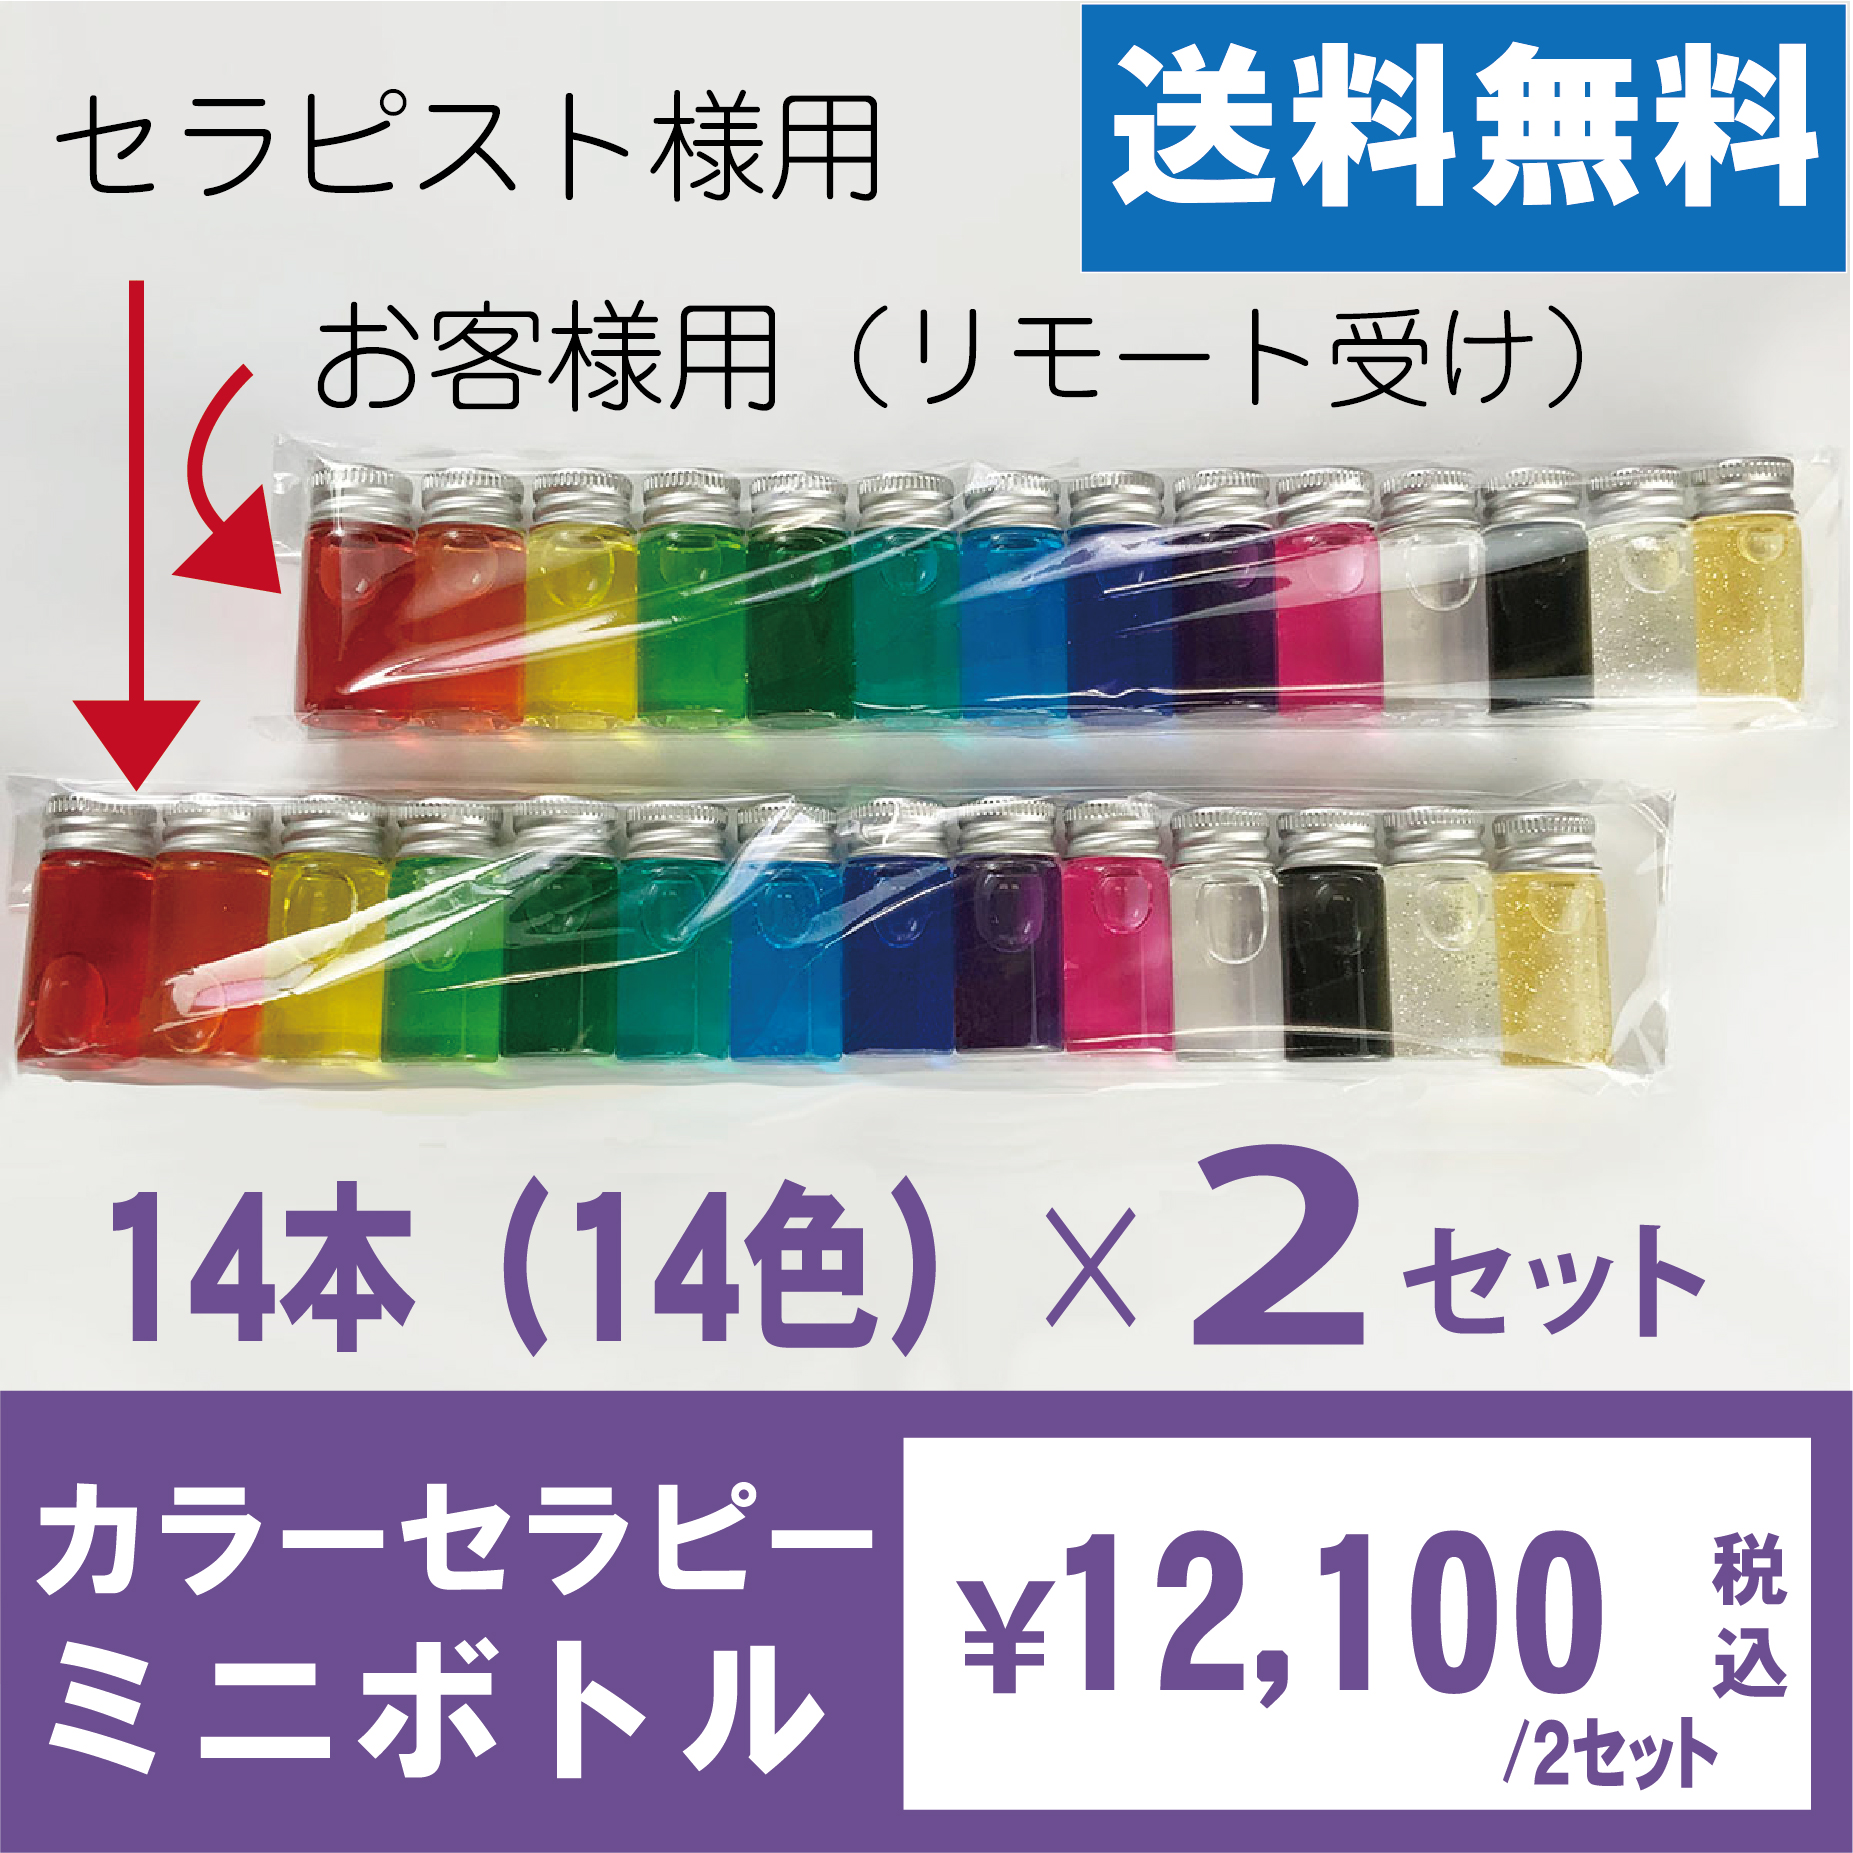 リモート用カラーセラピーミニボトルセット【14本×2セット入】